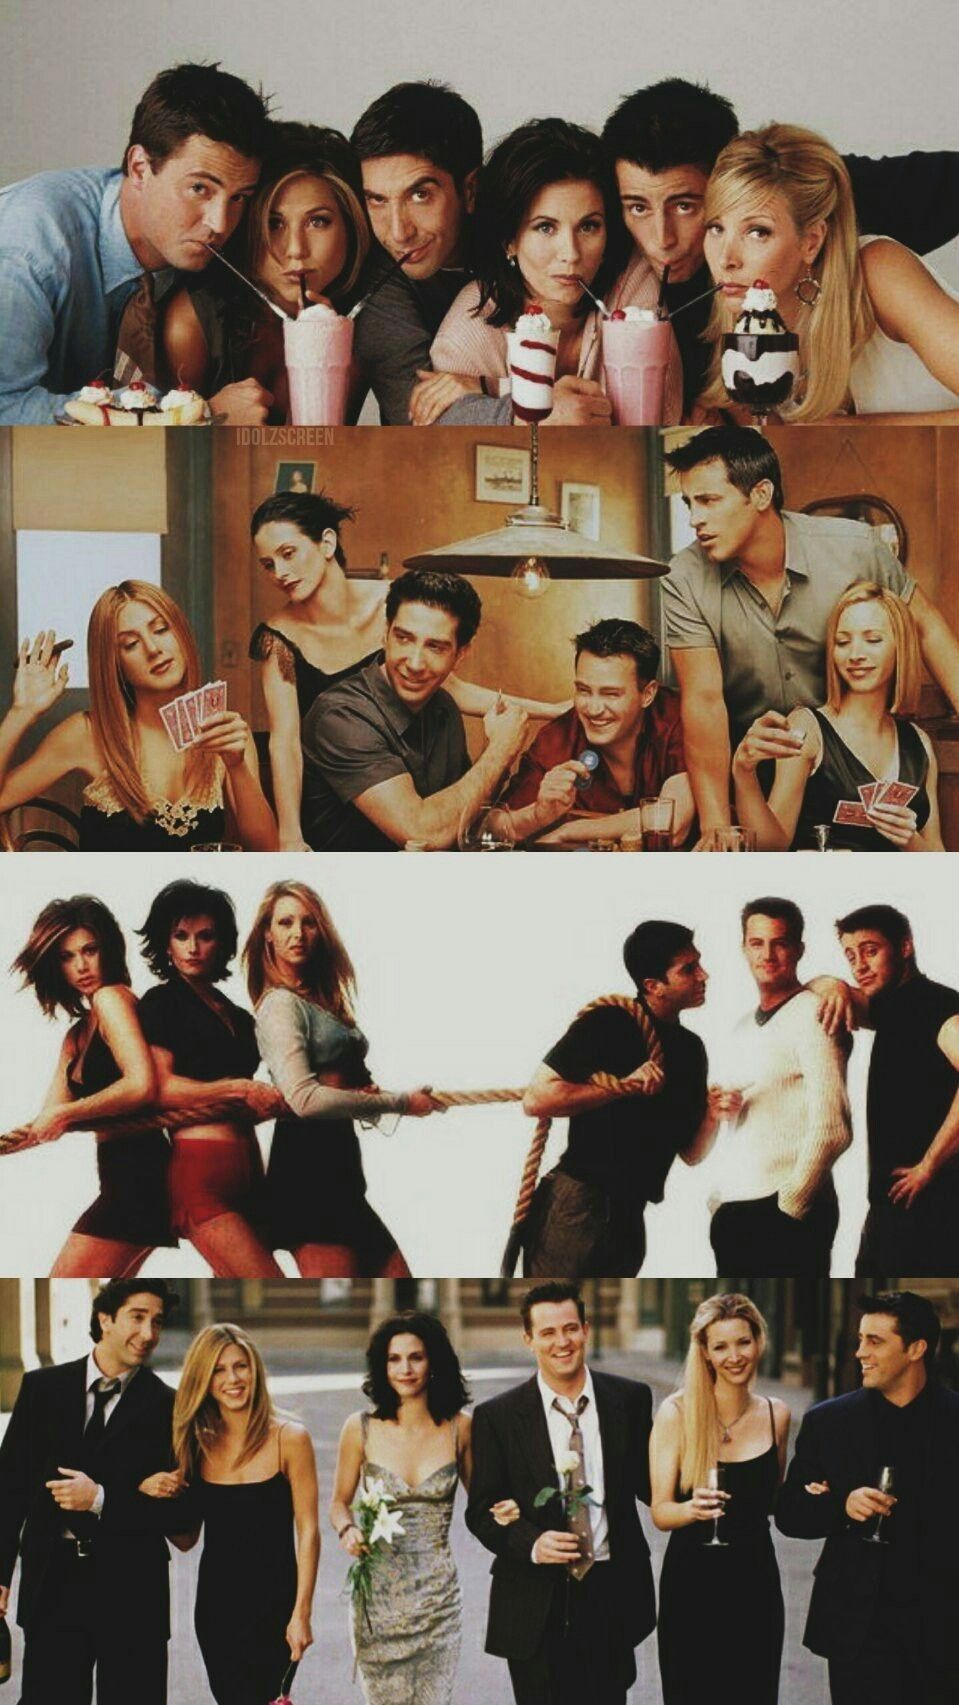 Friends #Ross #Rachel #Monica #Chandler #Joey #Phoebe #FriendsWallpaper. Friends wallpaper, Friends cast, Friends moments